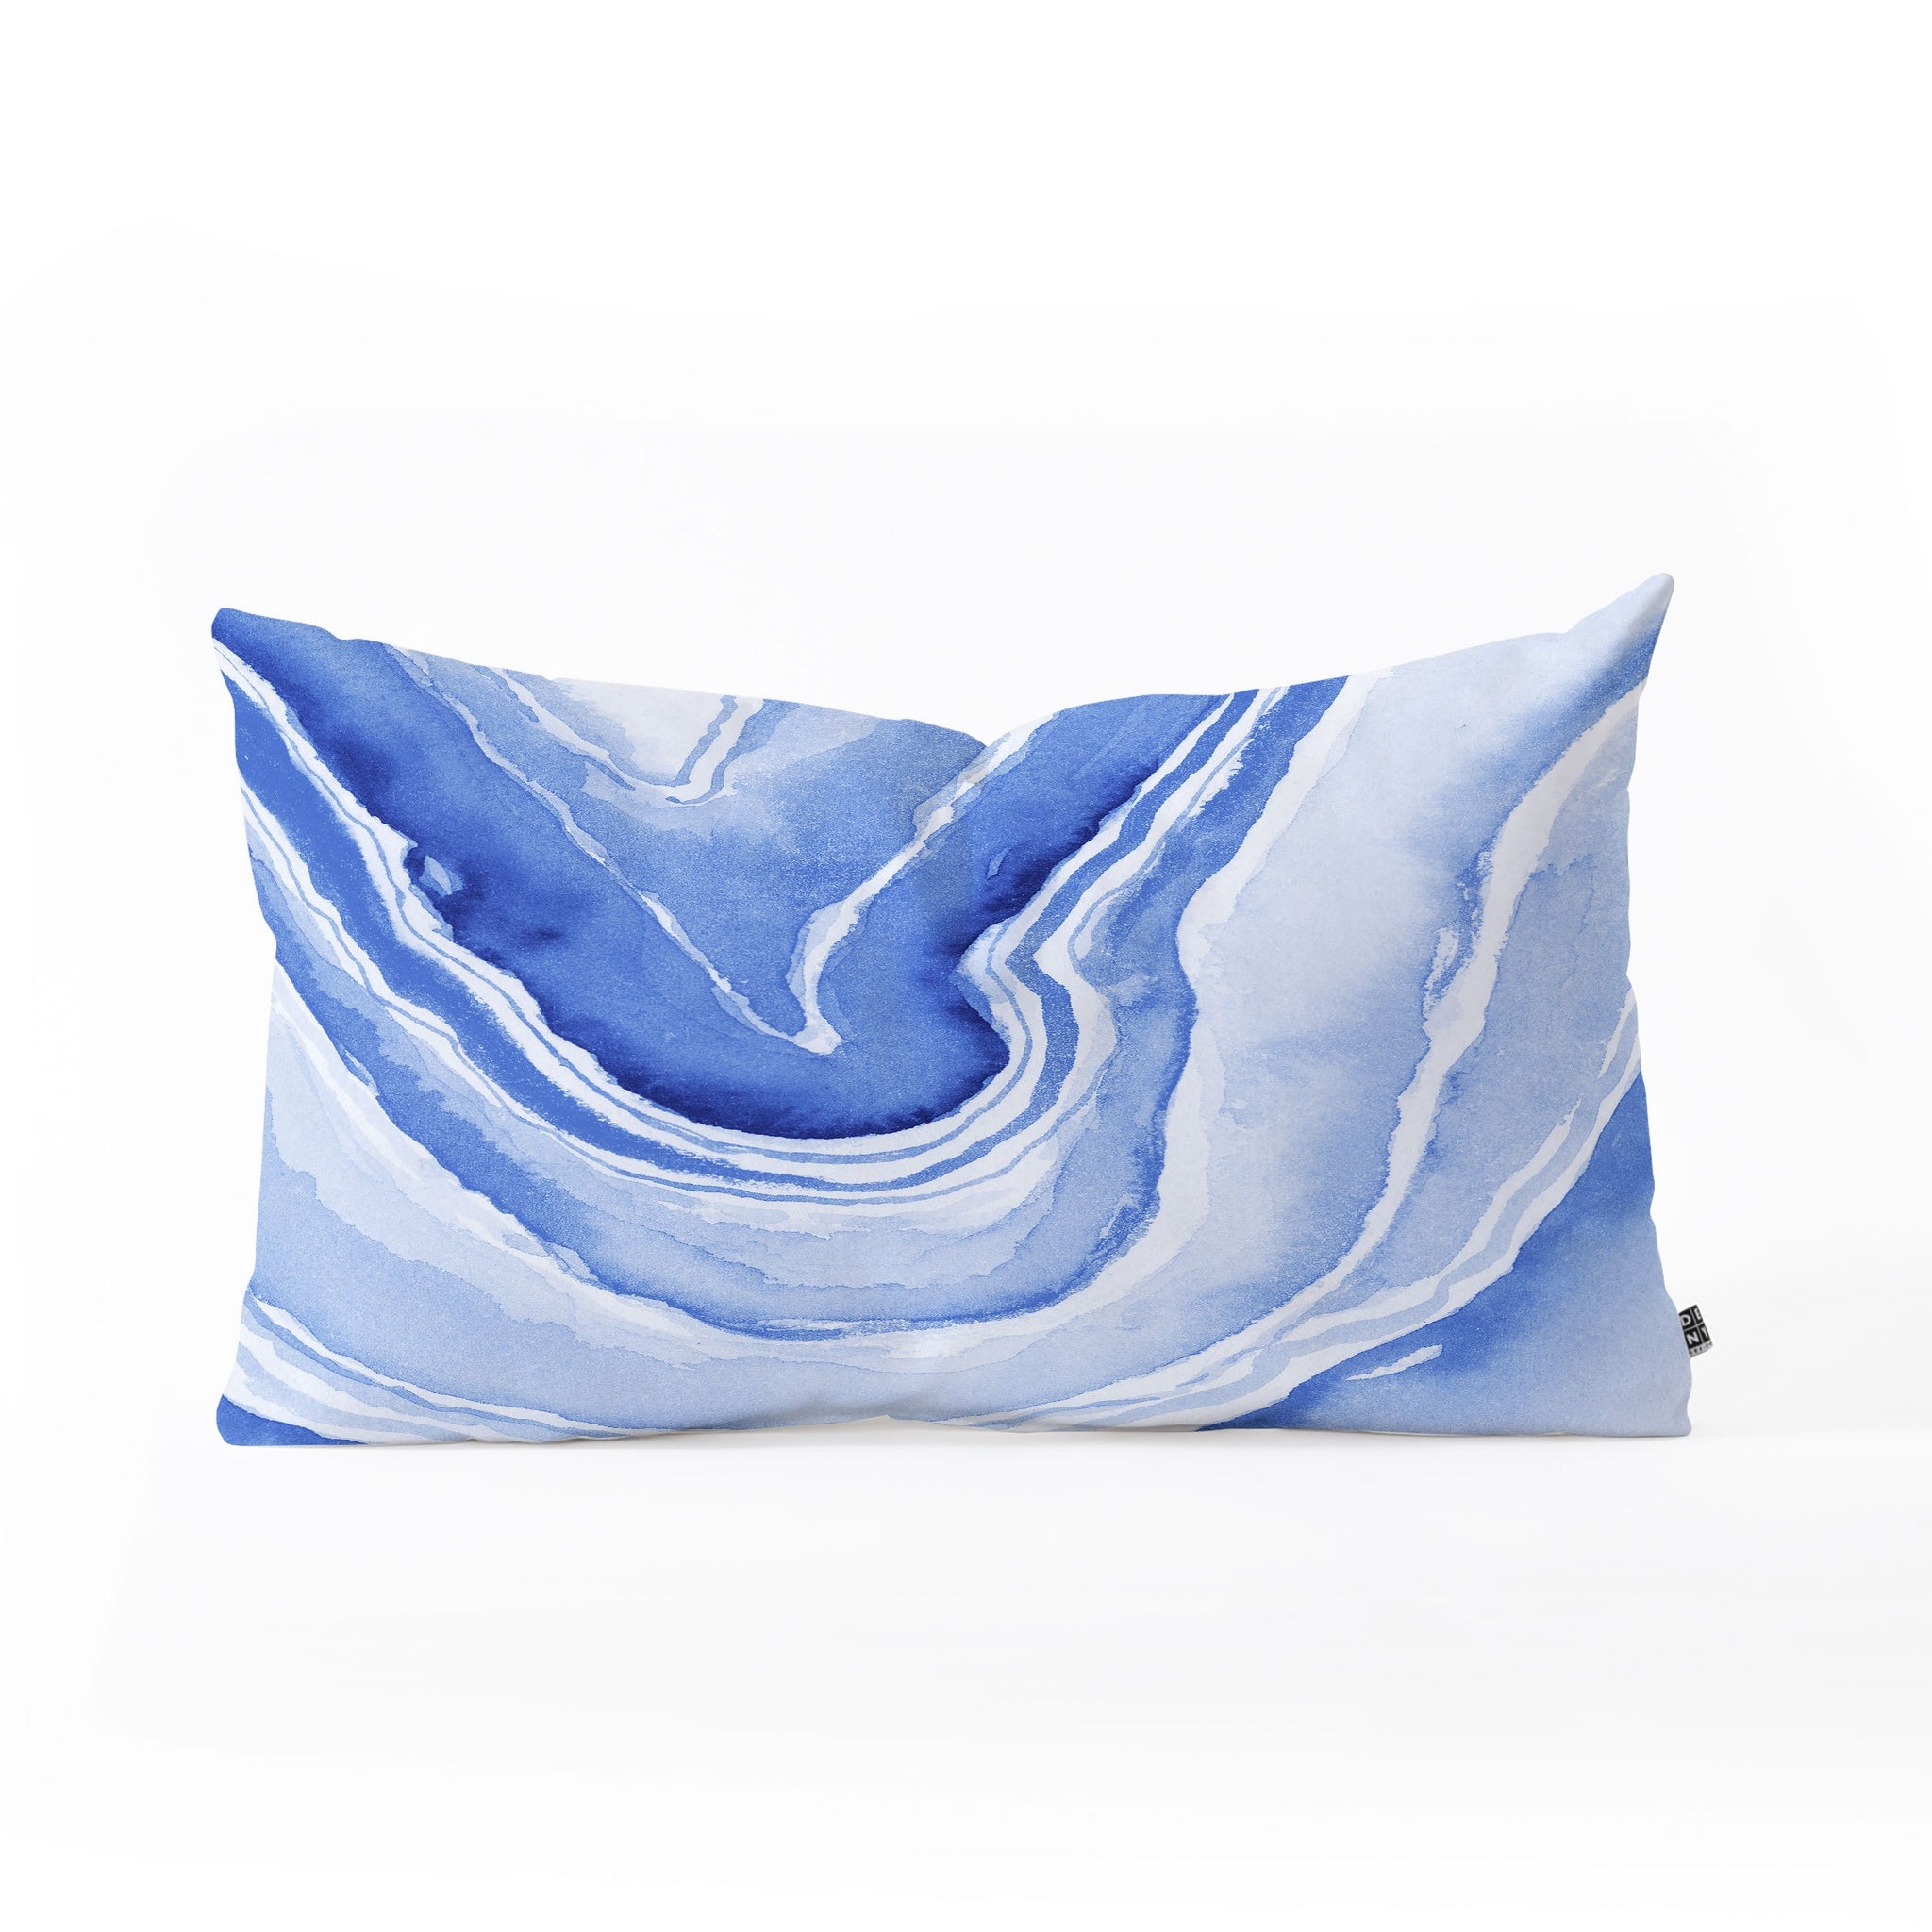 Blue Lace Agate Oblong Pillow